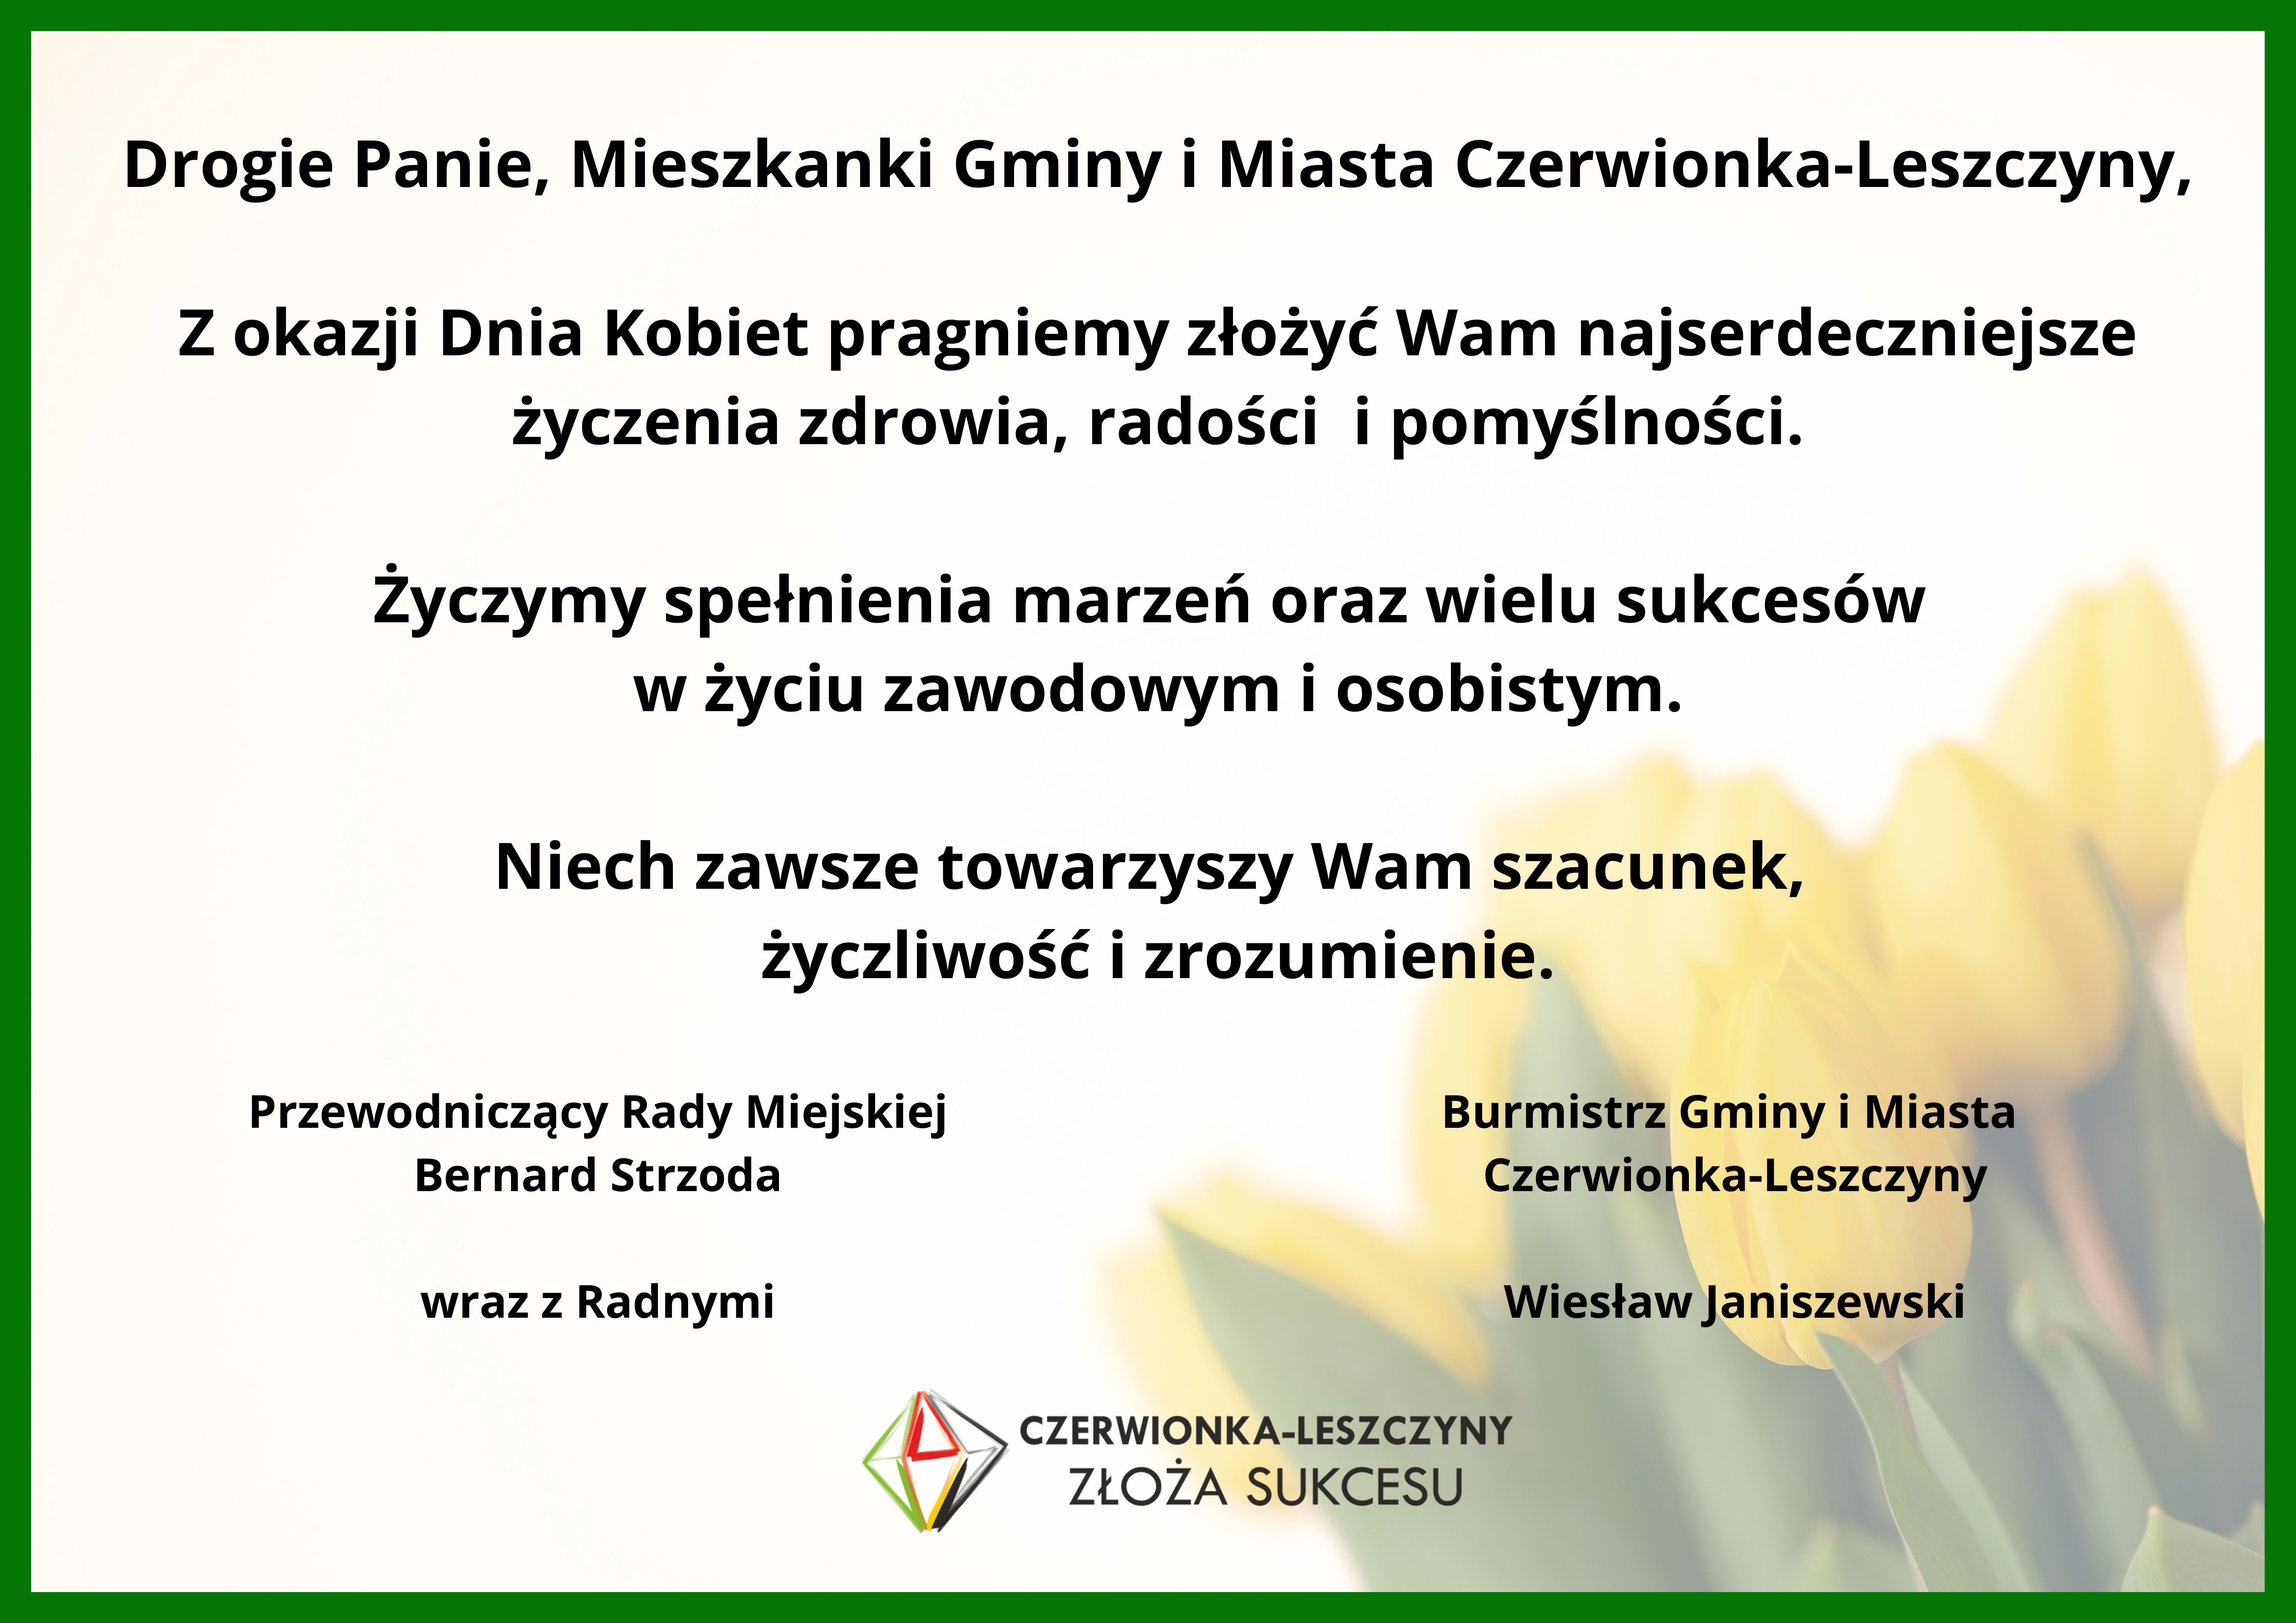 Życzenia Burmistrza Gminy i Miasta Czerwionka-Leszczyny oraz Przewodniczącego Rady Miejskiej z okazji Dnia Kobiet